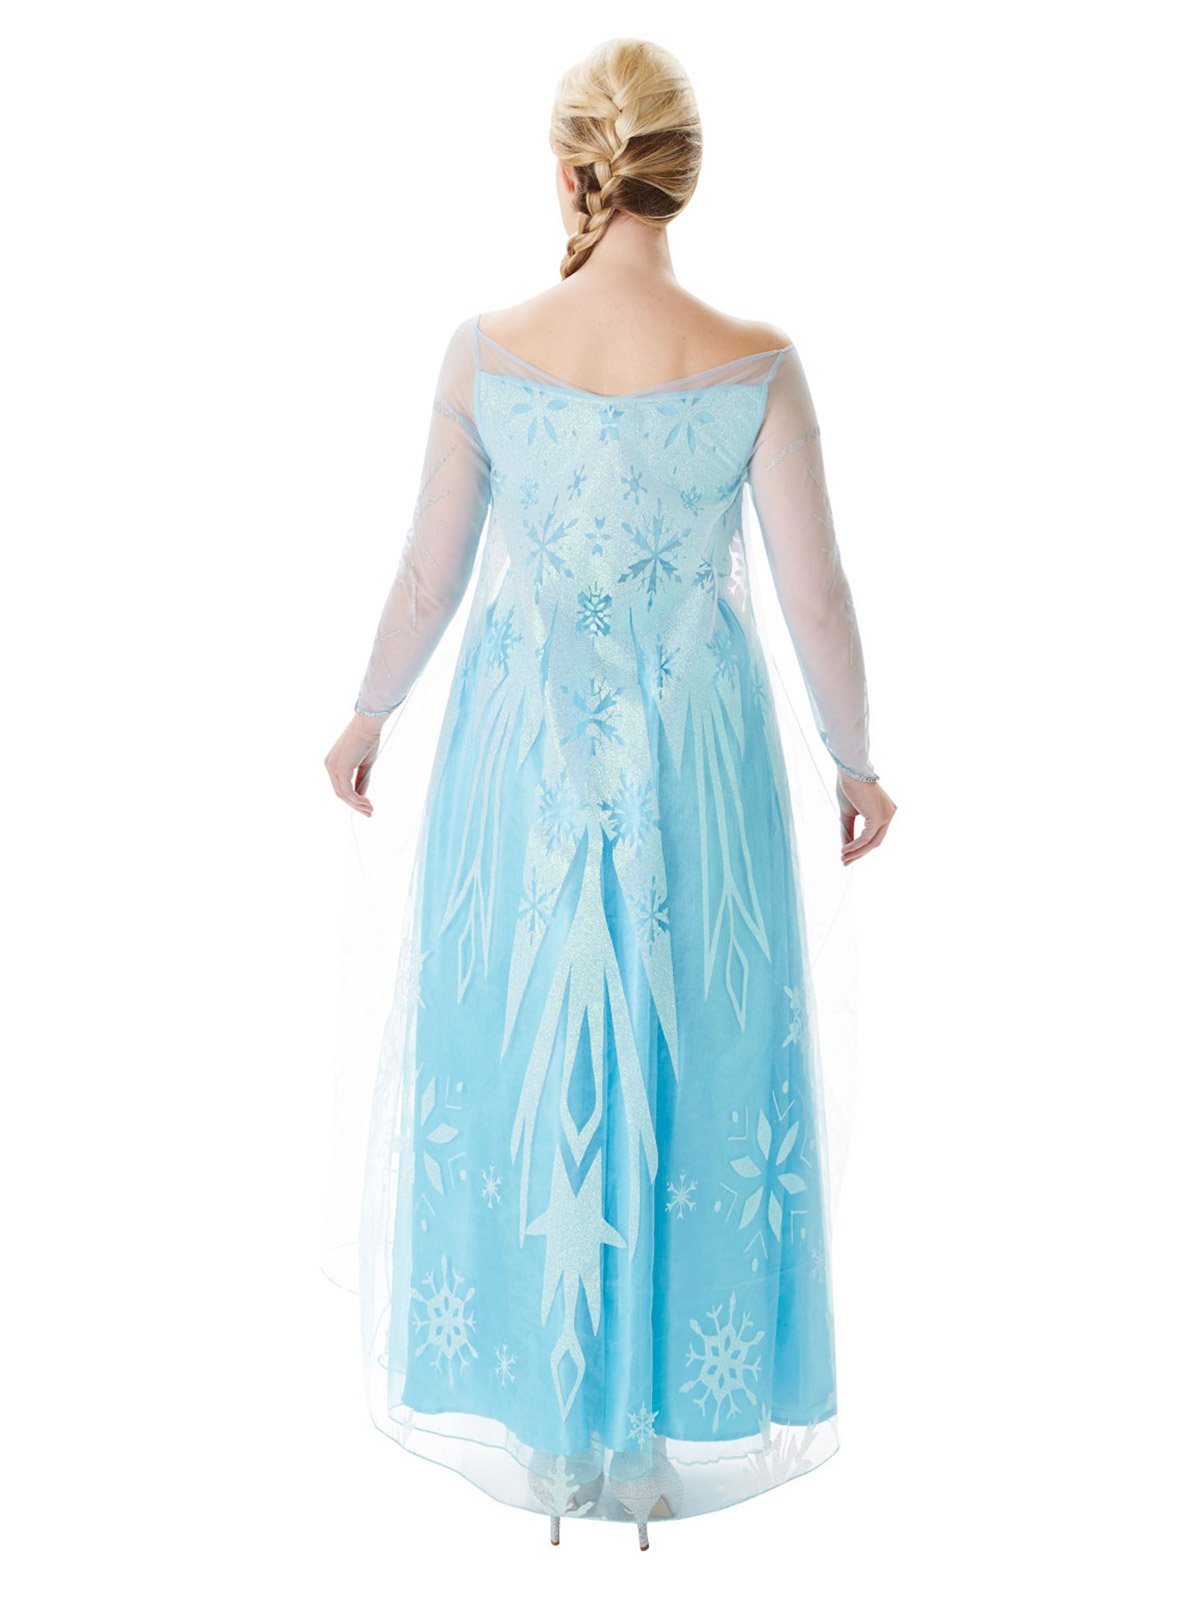 Costume Adult Frozen 2 Elsa Medium